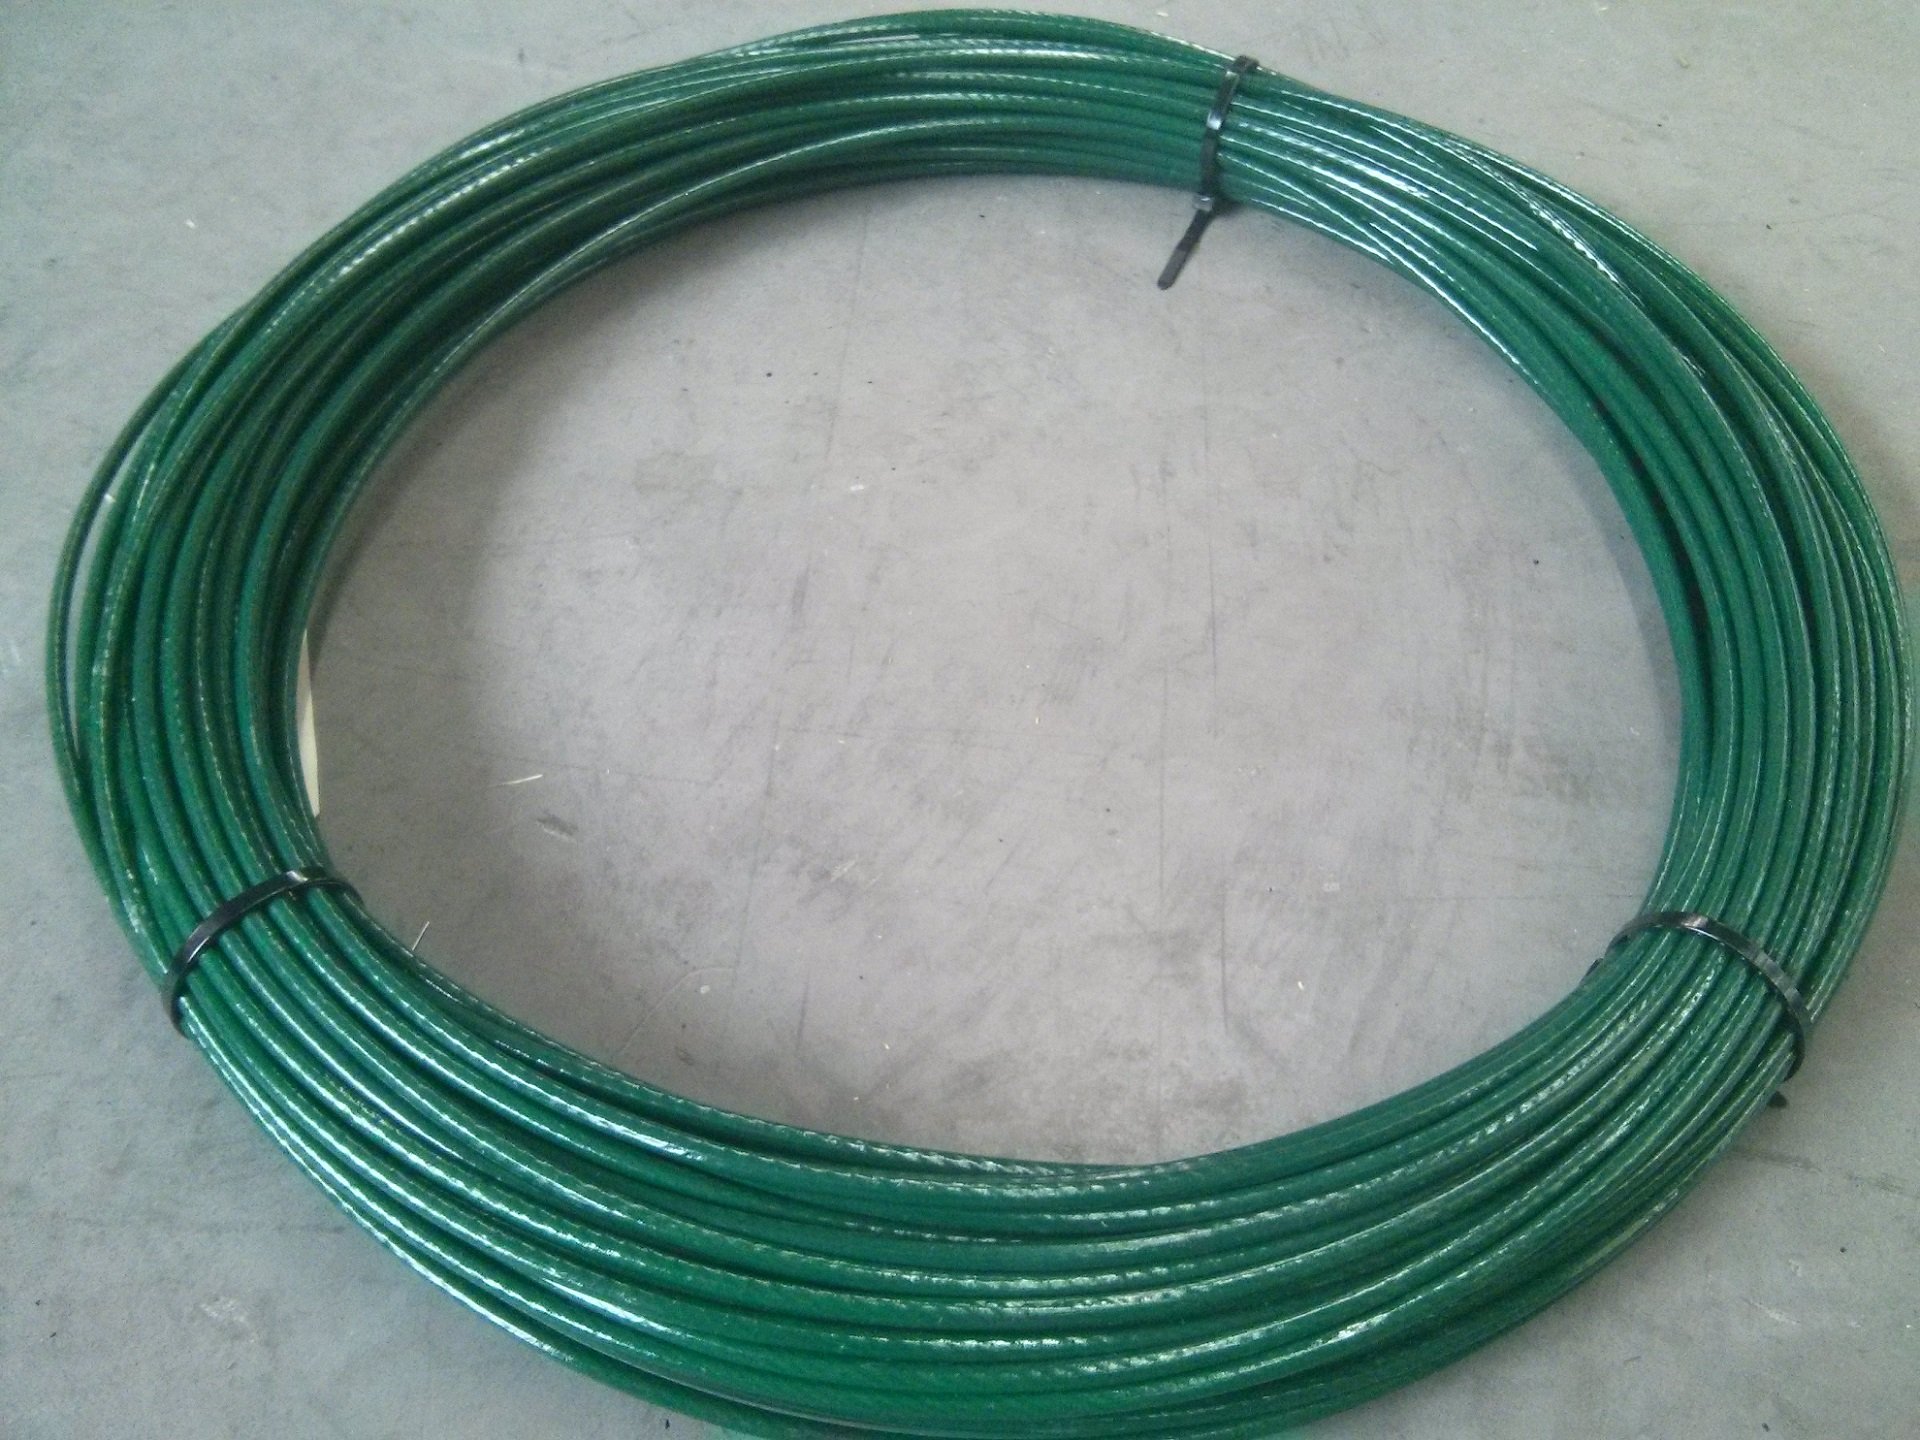 PVC - Câble en acier avec gaine - Différents diamètres et longueurs